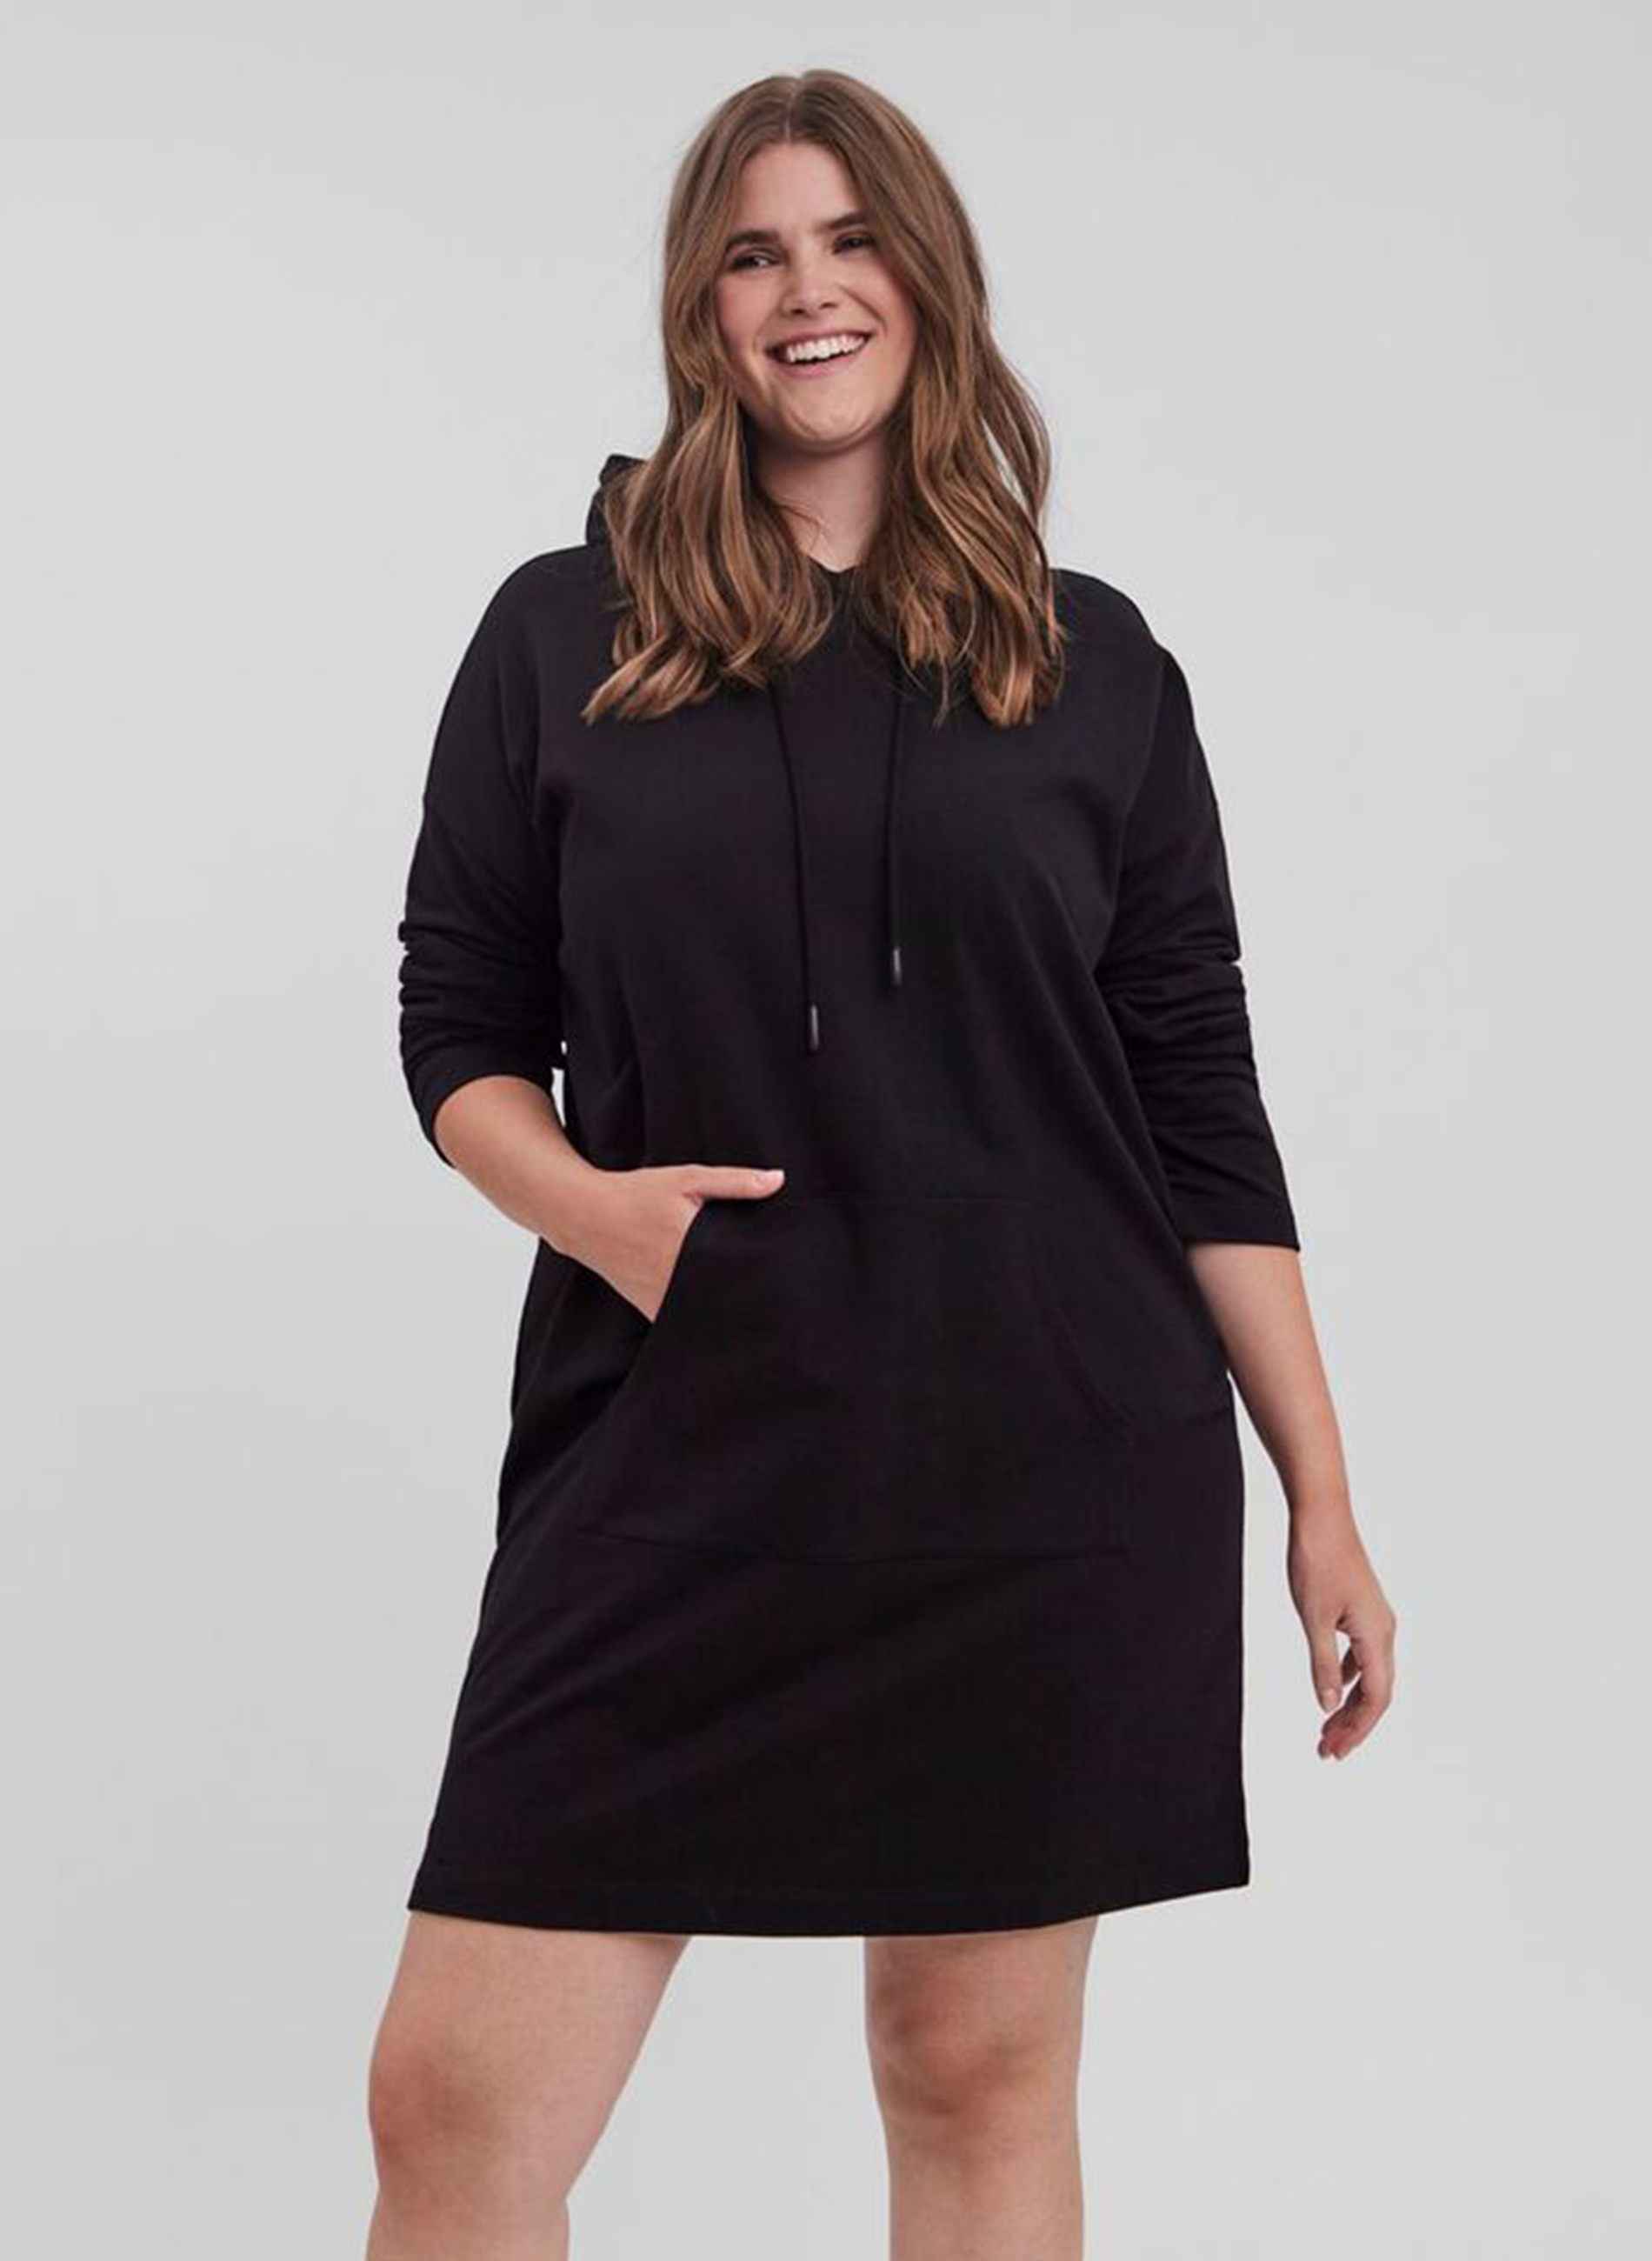 Φούτερ μαύρο μπλουζοφόρεμα, φτιαγμένο από οργανικό βαμβάκι, σε άνετη γραμμή. Με μπροστινή τσέπη και ρυμιζόμενα κορδόνια, αποτελεί εξαιρετική επιλογή για τις καθημερινές σας δραστηριότητες! 